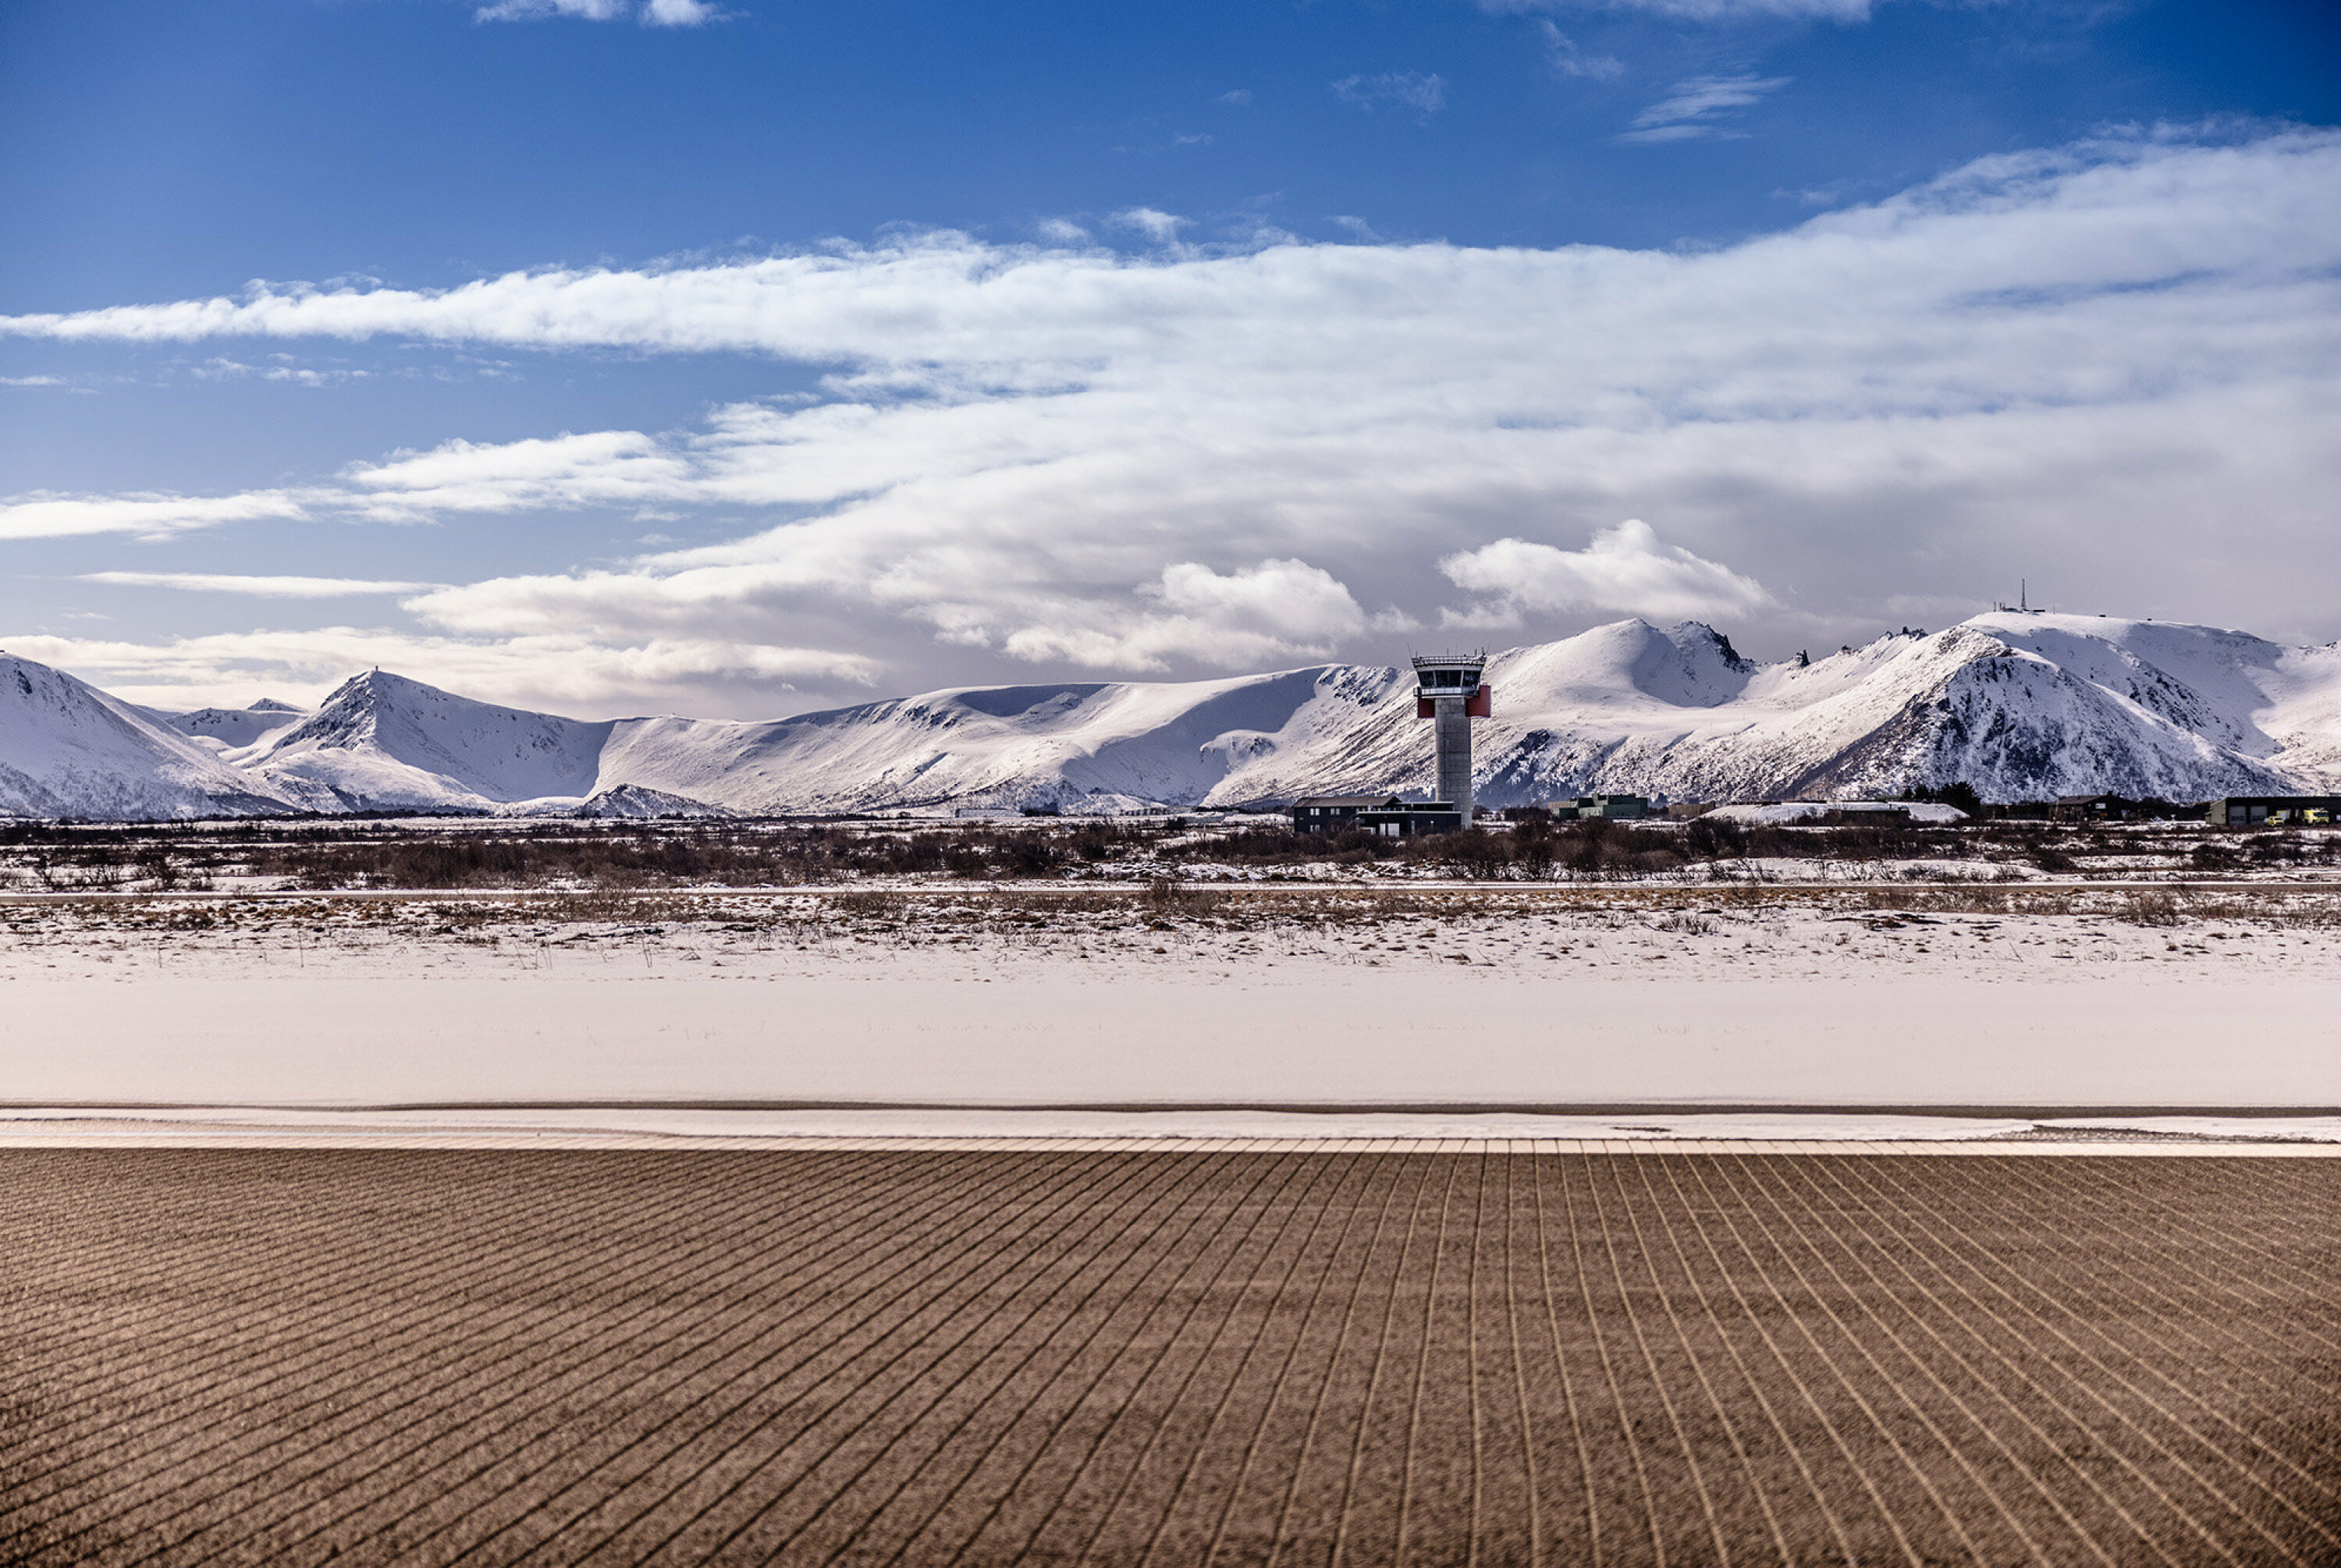 For at fly skal lande på Andøya må flystasjonen sørge for svart rullebane. Det er krevende når været skifter ofte.